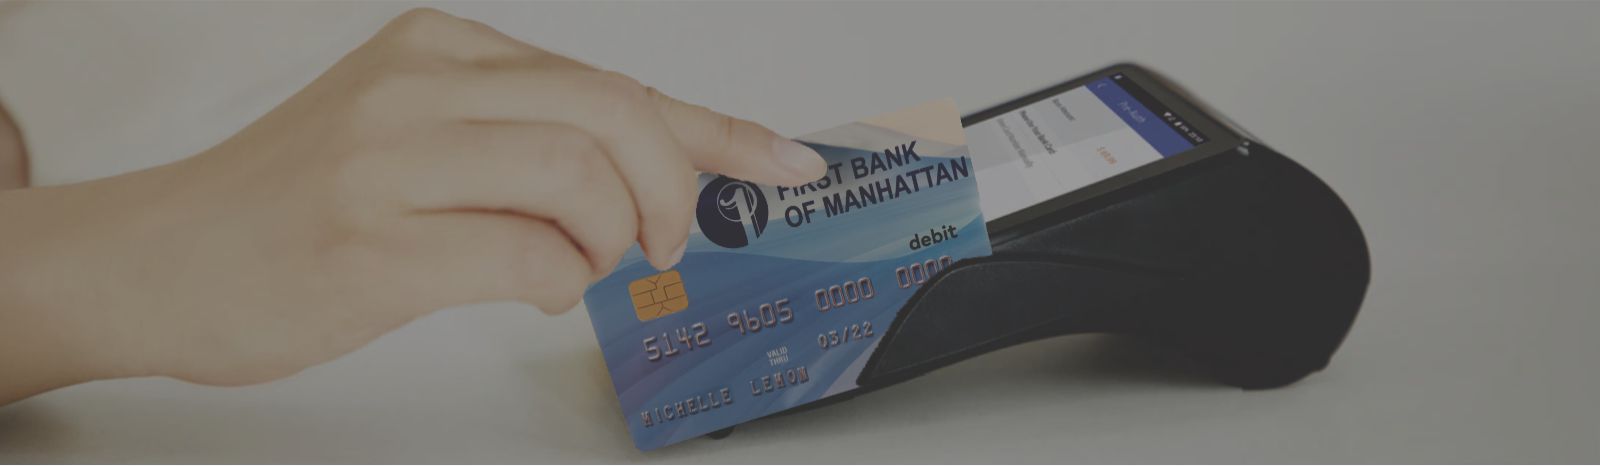 FBM debit card being swiped